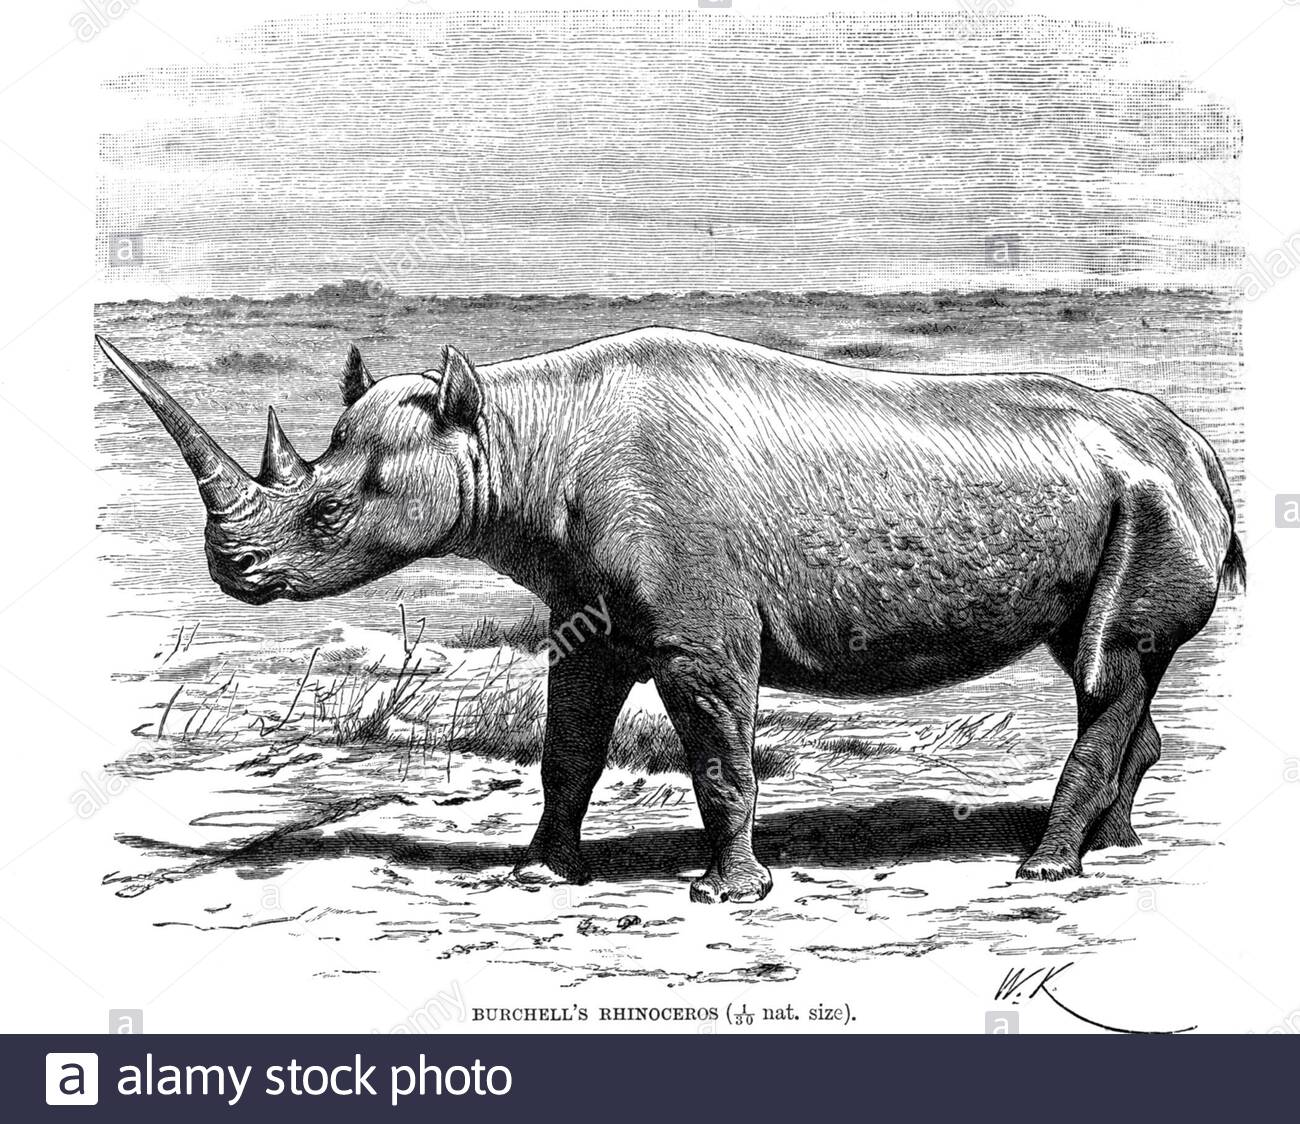 Rinoceronte di Burchell (rinoceronte bianco meridionale), illustrazione d'epoca del 1894 Foto Stock